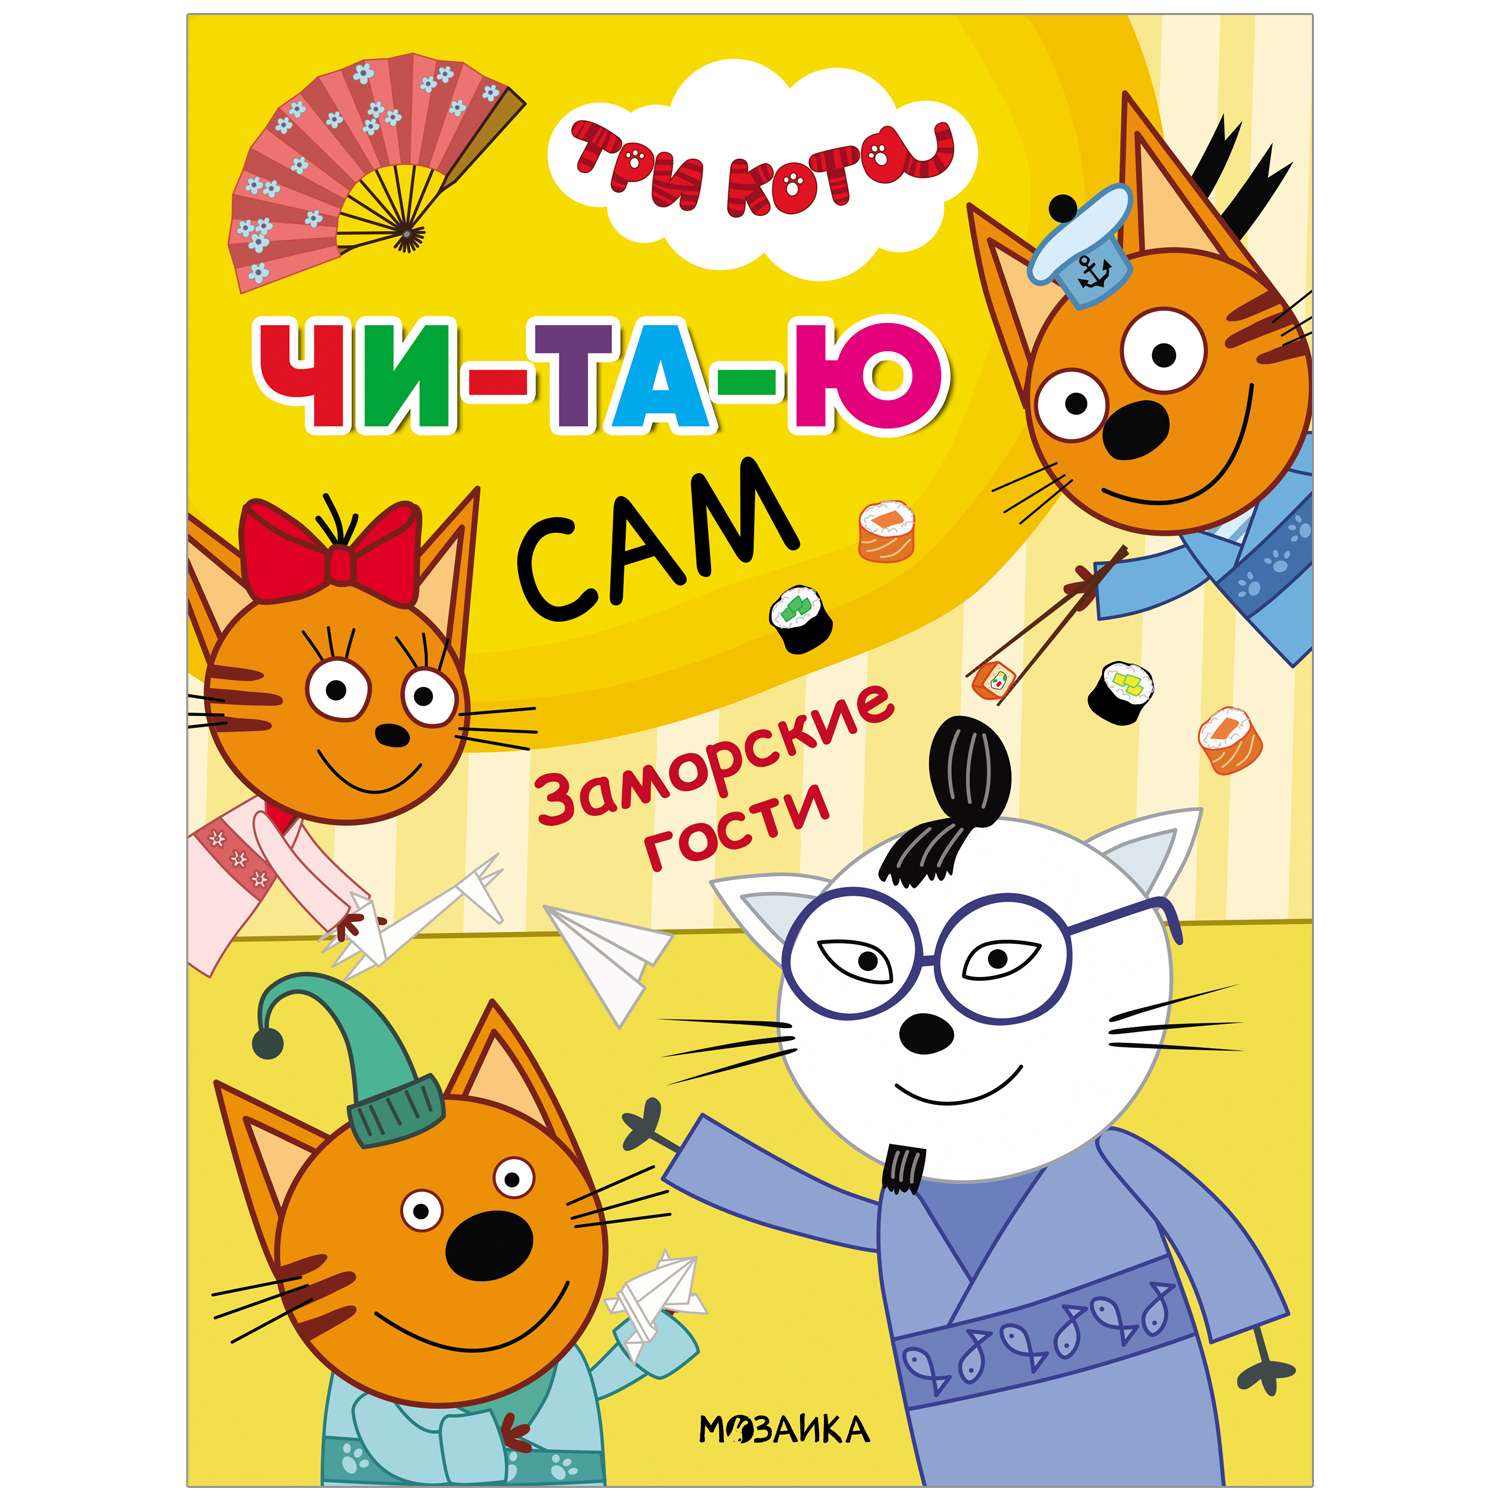 Книга МОЗАИКА kids Три кота Читаю сам Заморские гости - фото 1